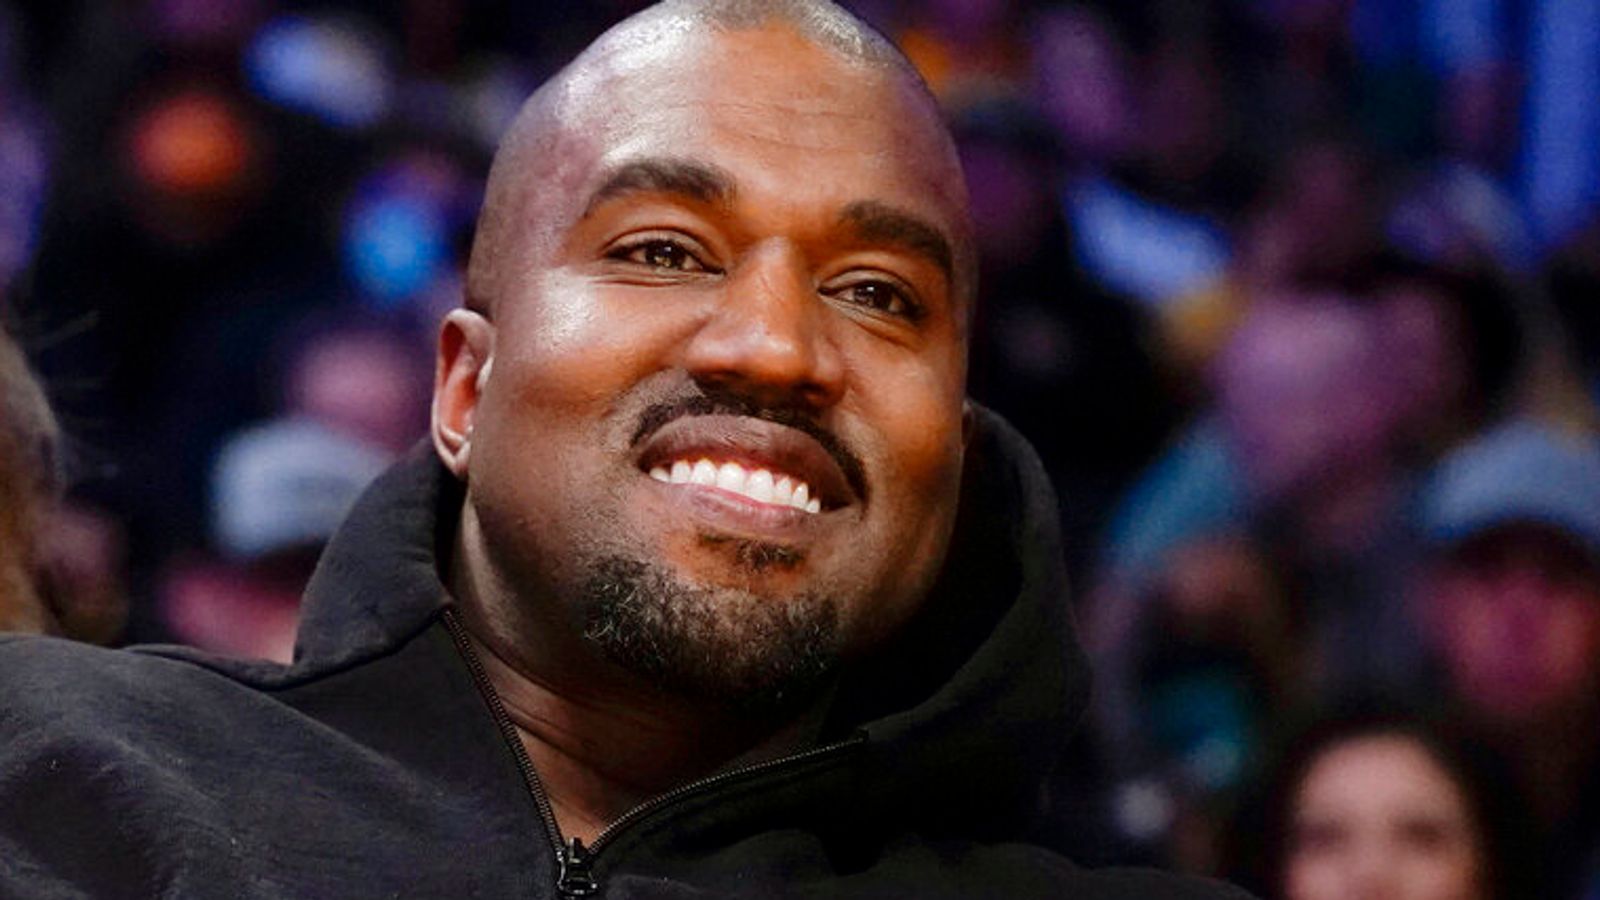 Kanye West a une « obsession nazie étrange, dégoûtante et haineuse », affirme un ancien collaborateur |  Nouvelles américaines